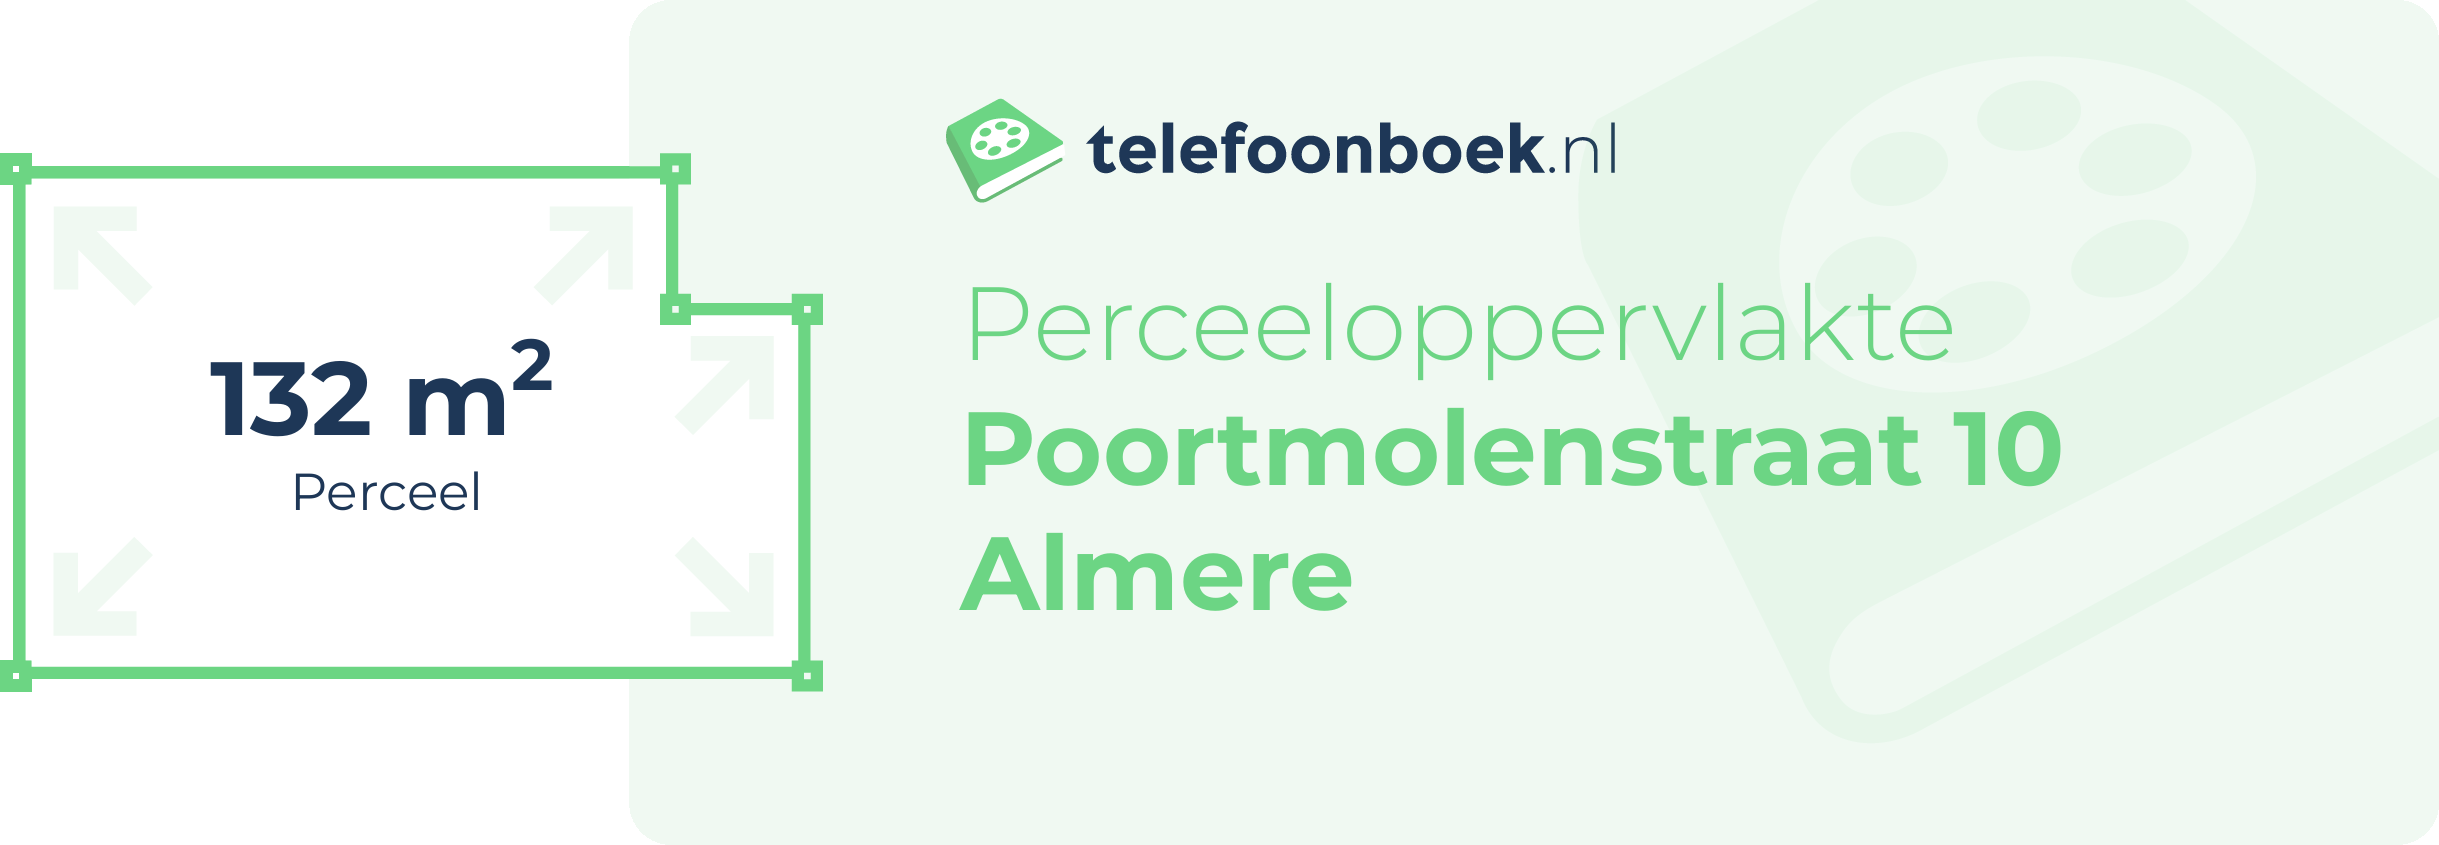 Perceeloppervlakte Poortmolenstraat 10 Almere